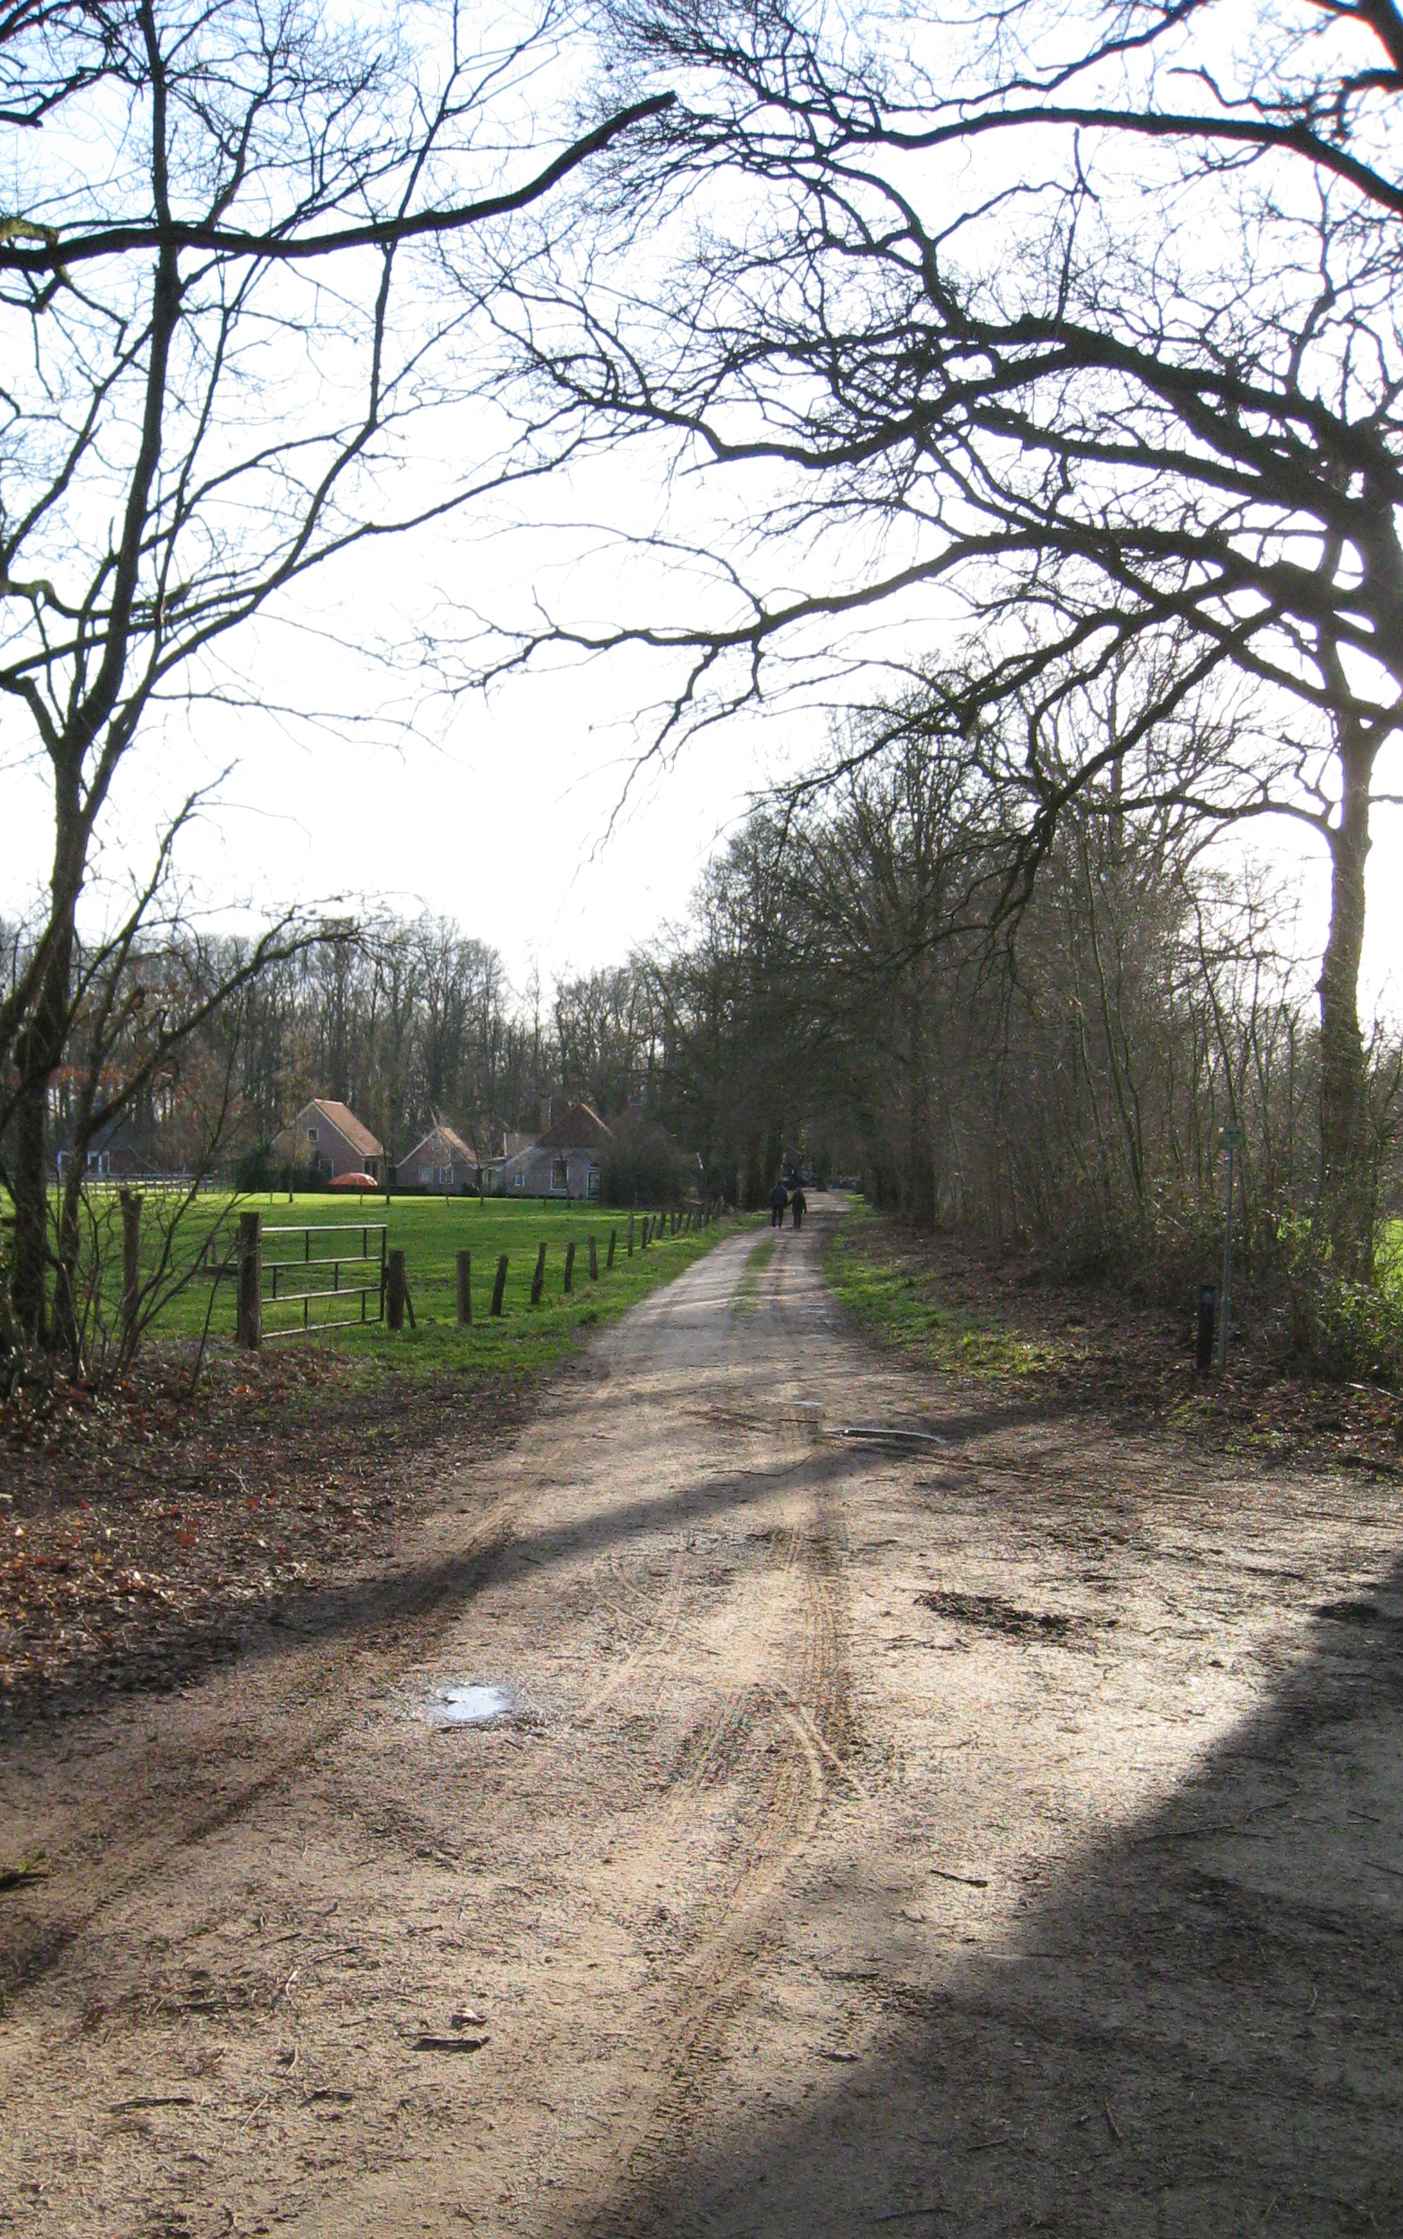 Via 't Wievenveld in Mallem sloot verkeer uit Eibergen aan op de oude hessenweg van Vreden over Rekken en Neede naar Deventer.